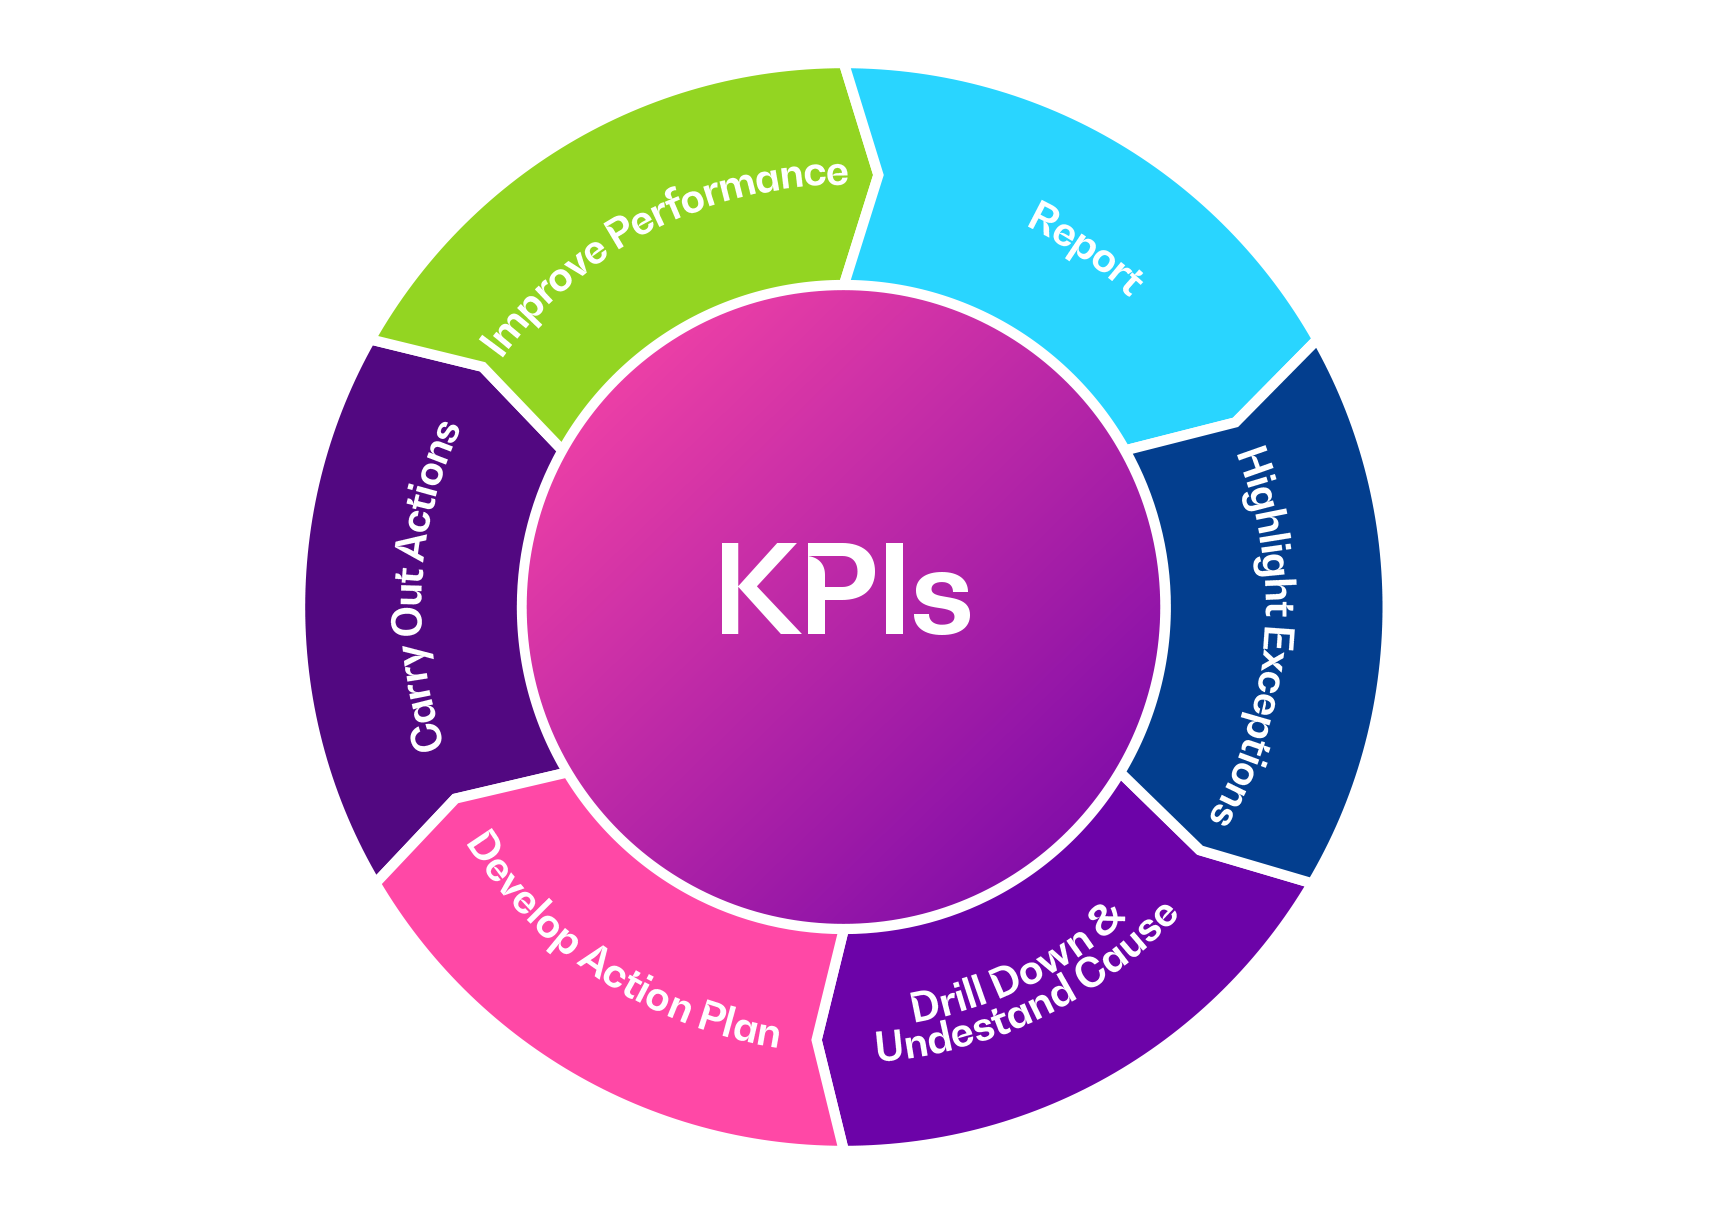 The KPI Wheel